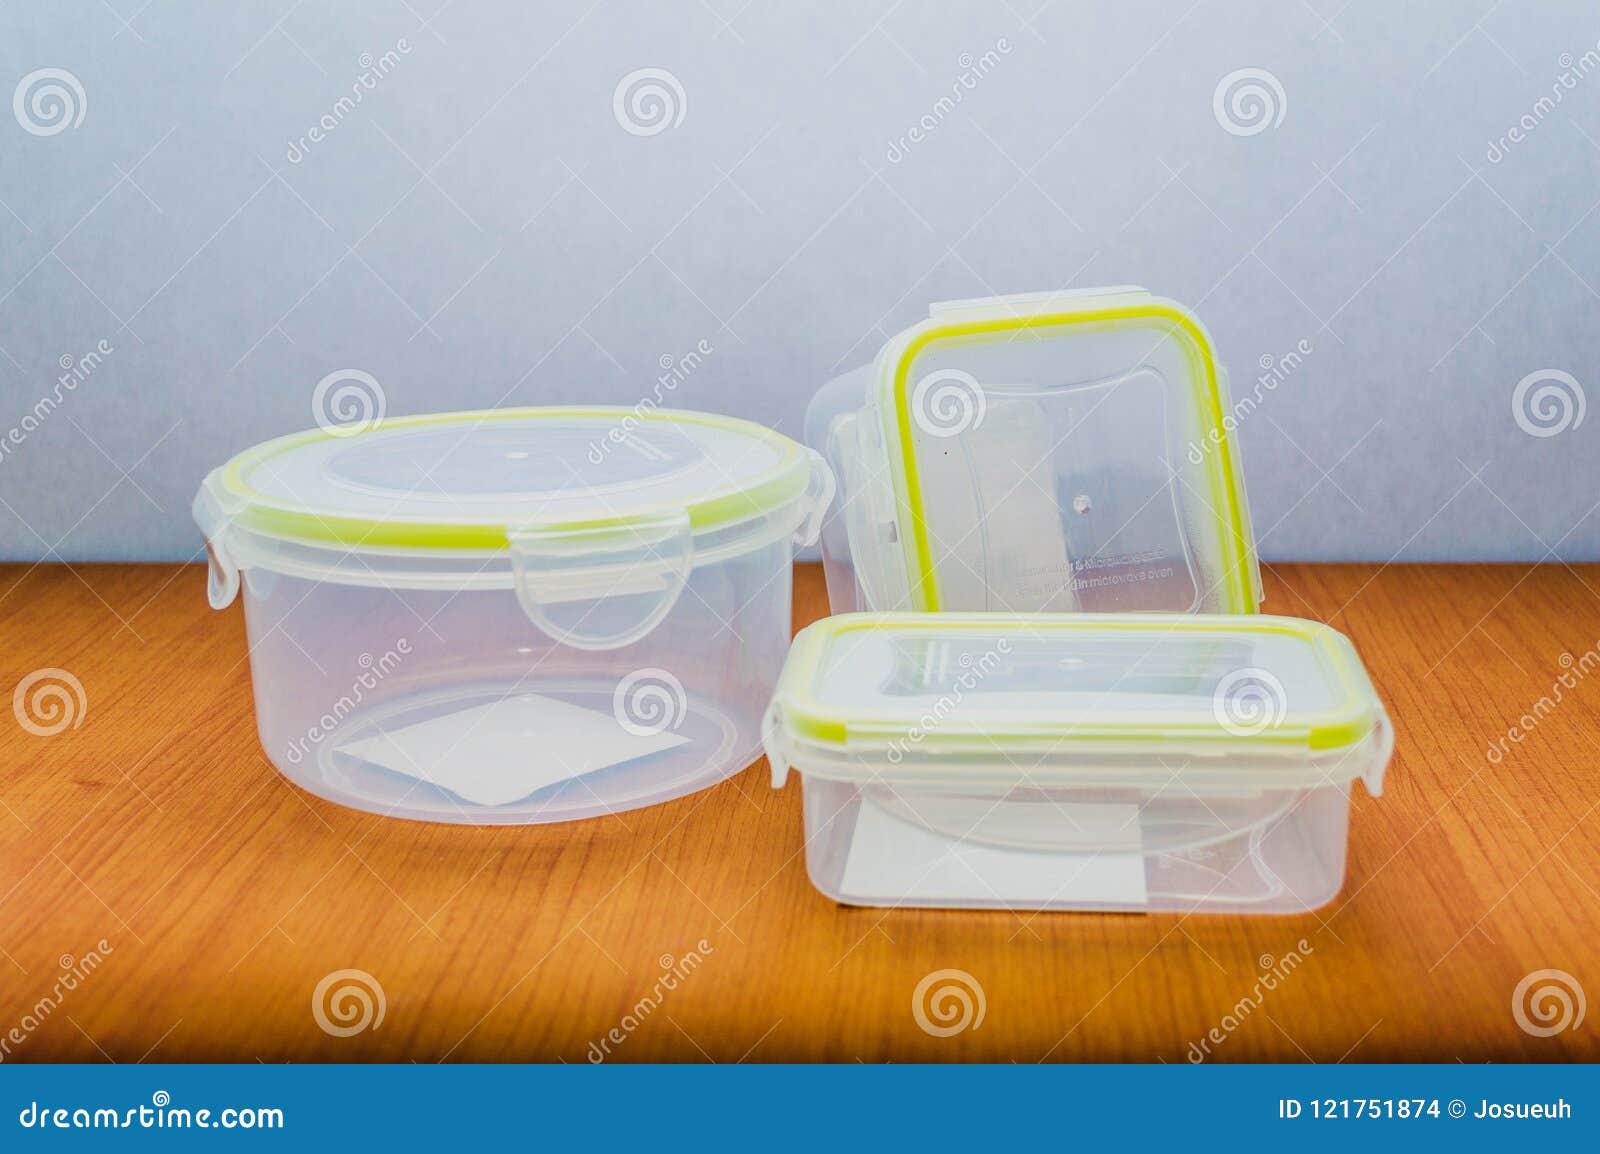 transparent plastic container